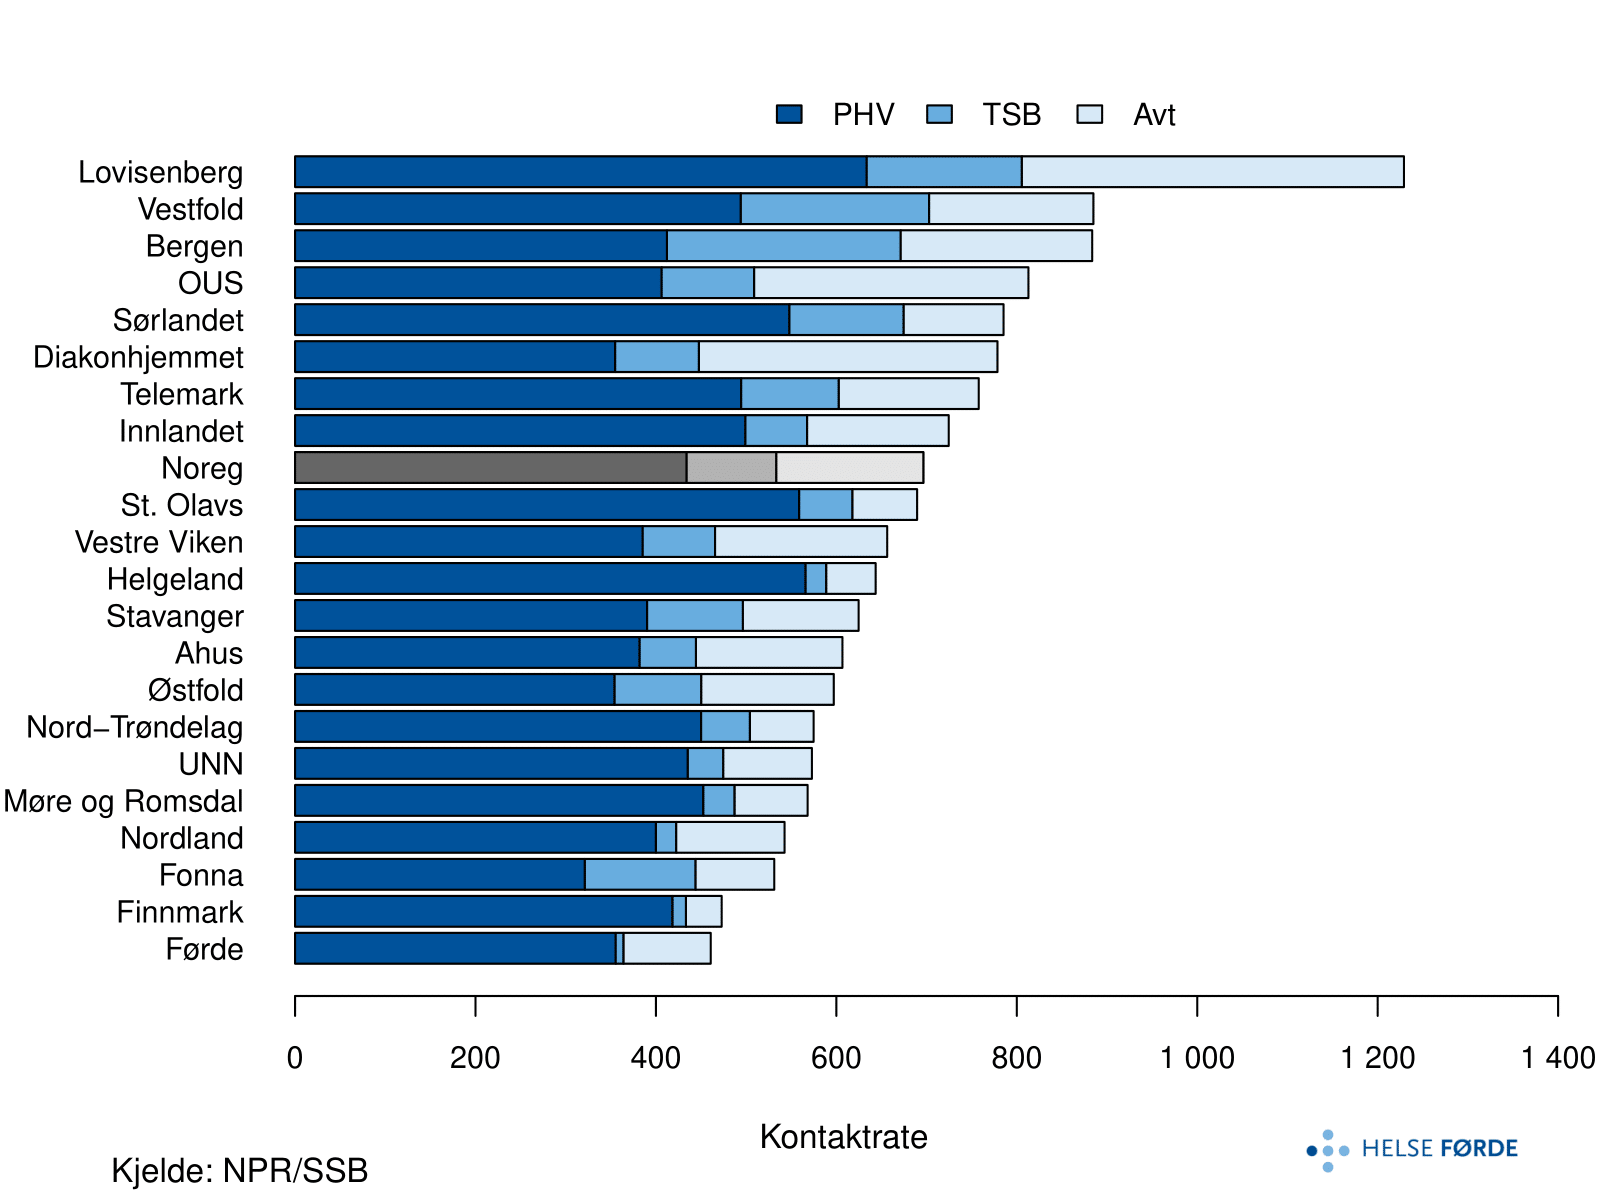 Poliklinisk kontaktrate fordelt på buområde og landet, med prosentvis inndeling av behandling i psykisk helsevern (PHV), tverrfagleg spesialisert behandling av ruslidingar (TSB) og avtalespesialistar - psykisk helsevern (Avt). Søylene viser gjennomsnittsverdiar per år (2014-2018). Ratane er justert for alder og kjønn.